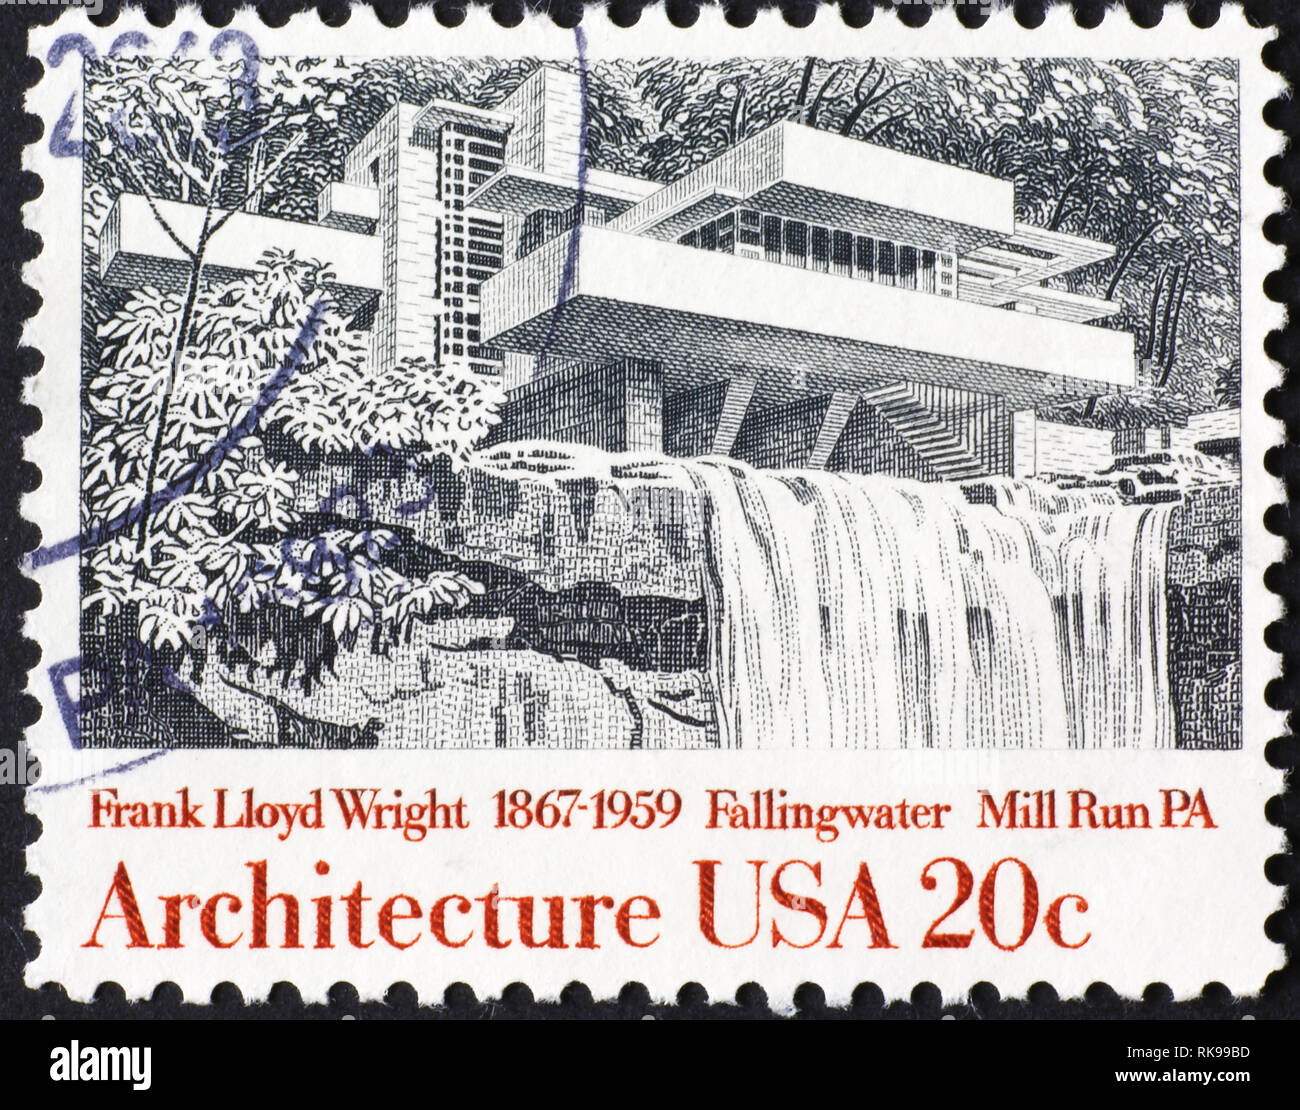 Maison Fallingwater de Frank Lloyd Wright sur timbre américain Banque D'Images